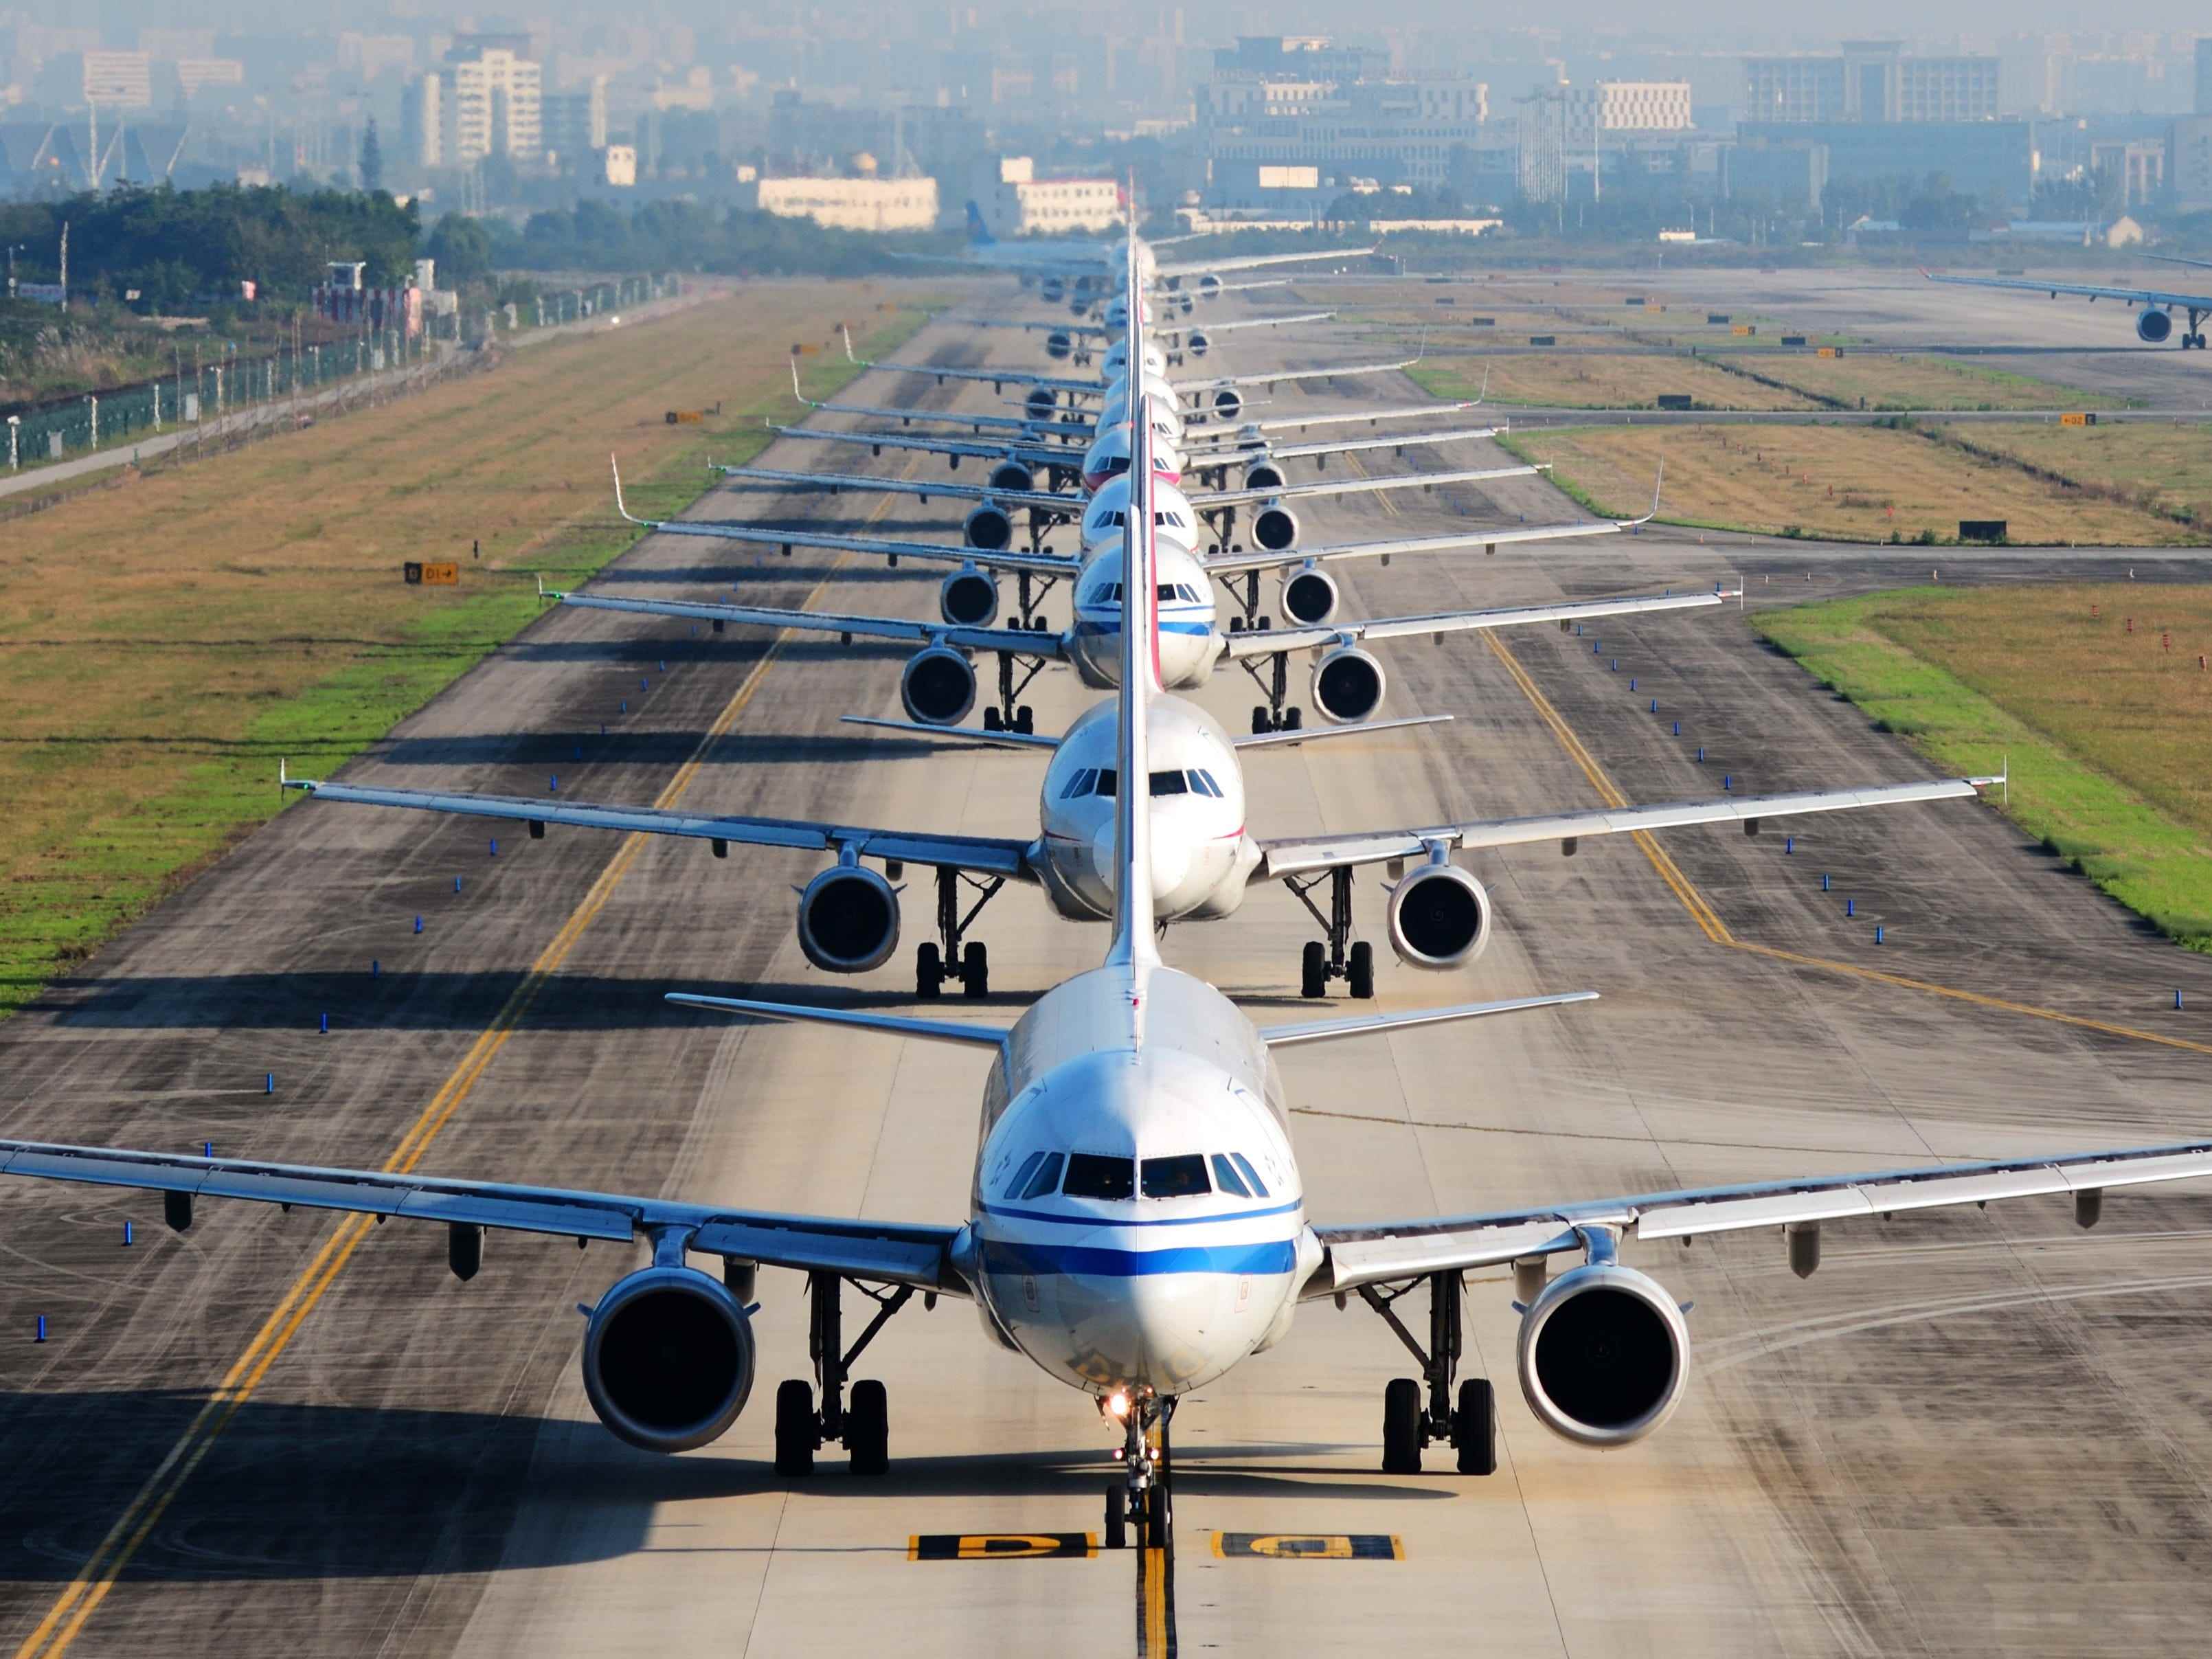 Eine Reihe von Flugzeugen auf der Landebahn, die auf den Start warten.